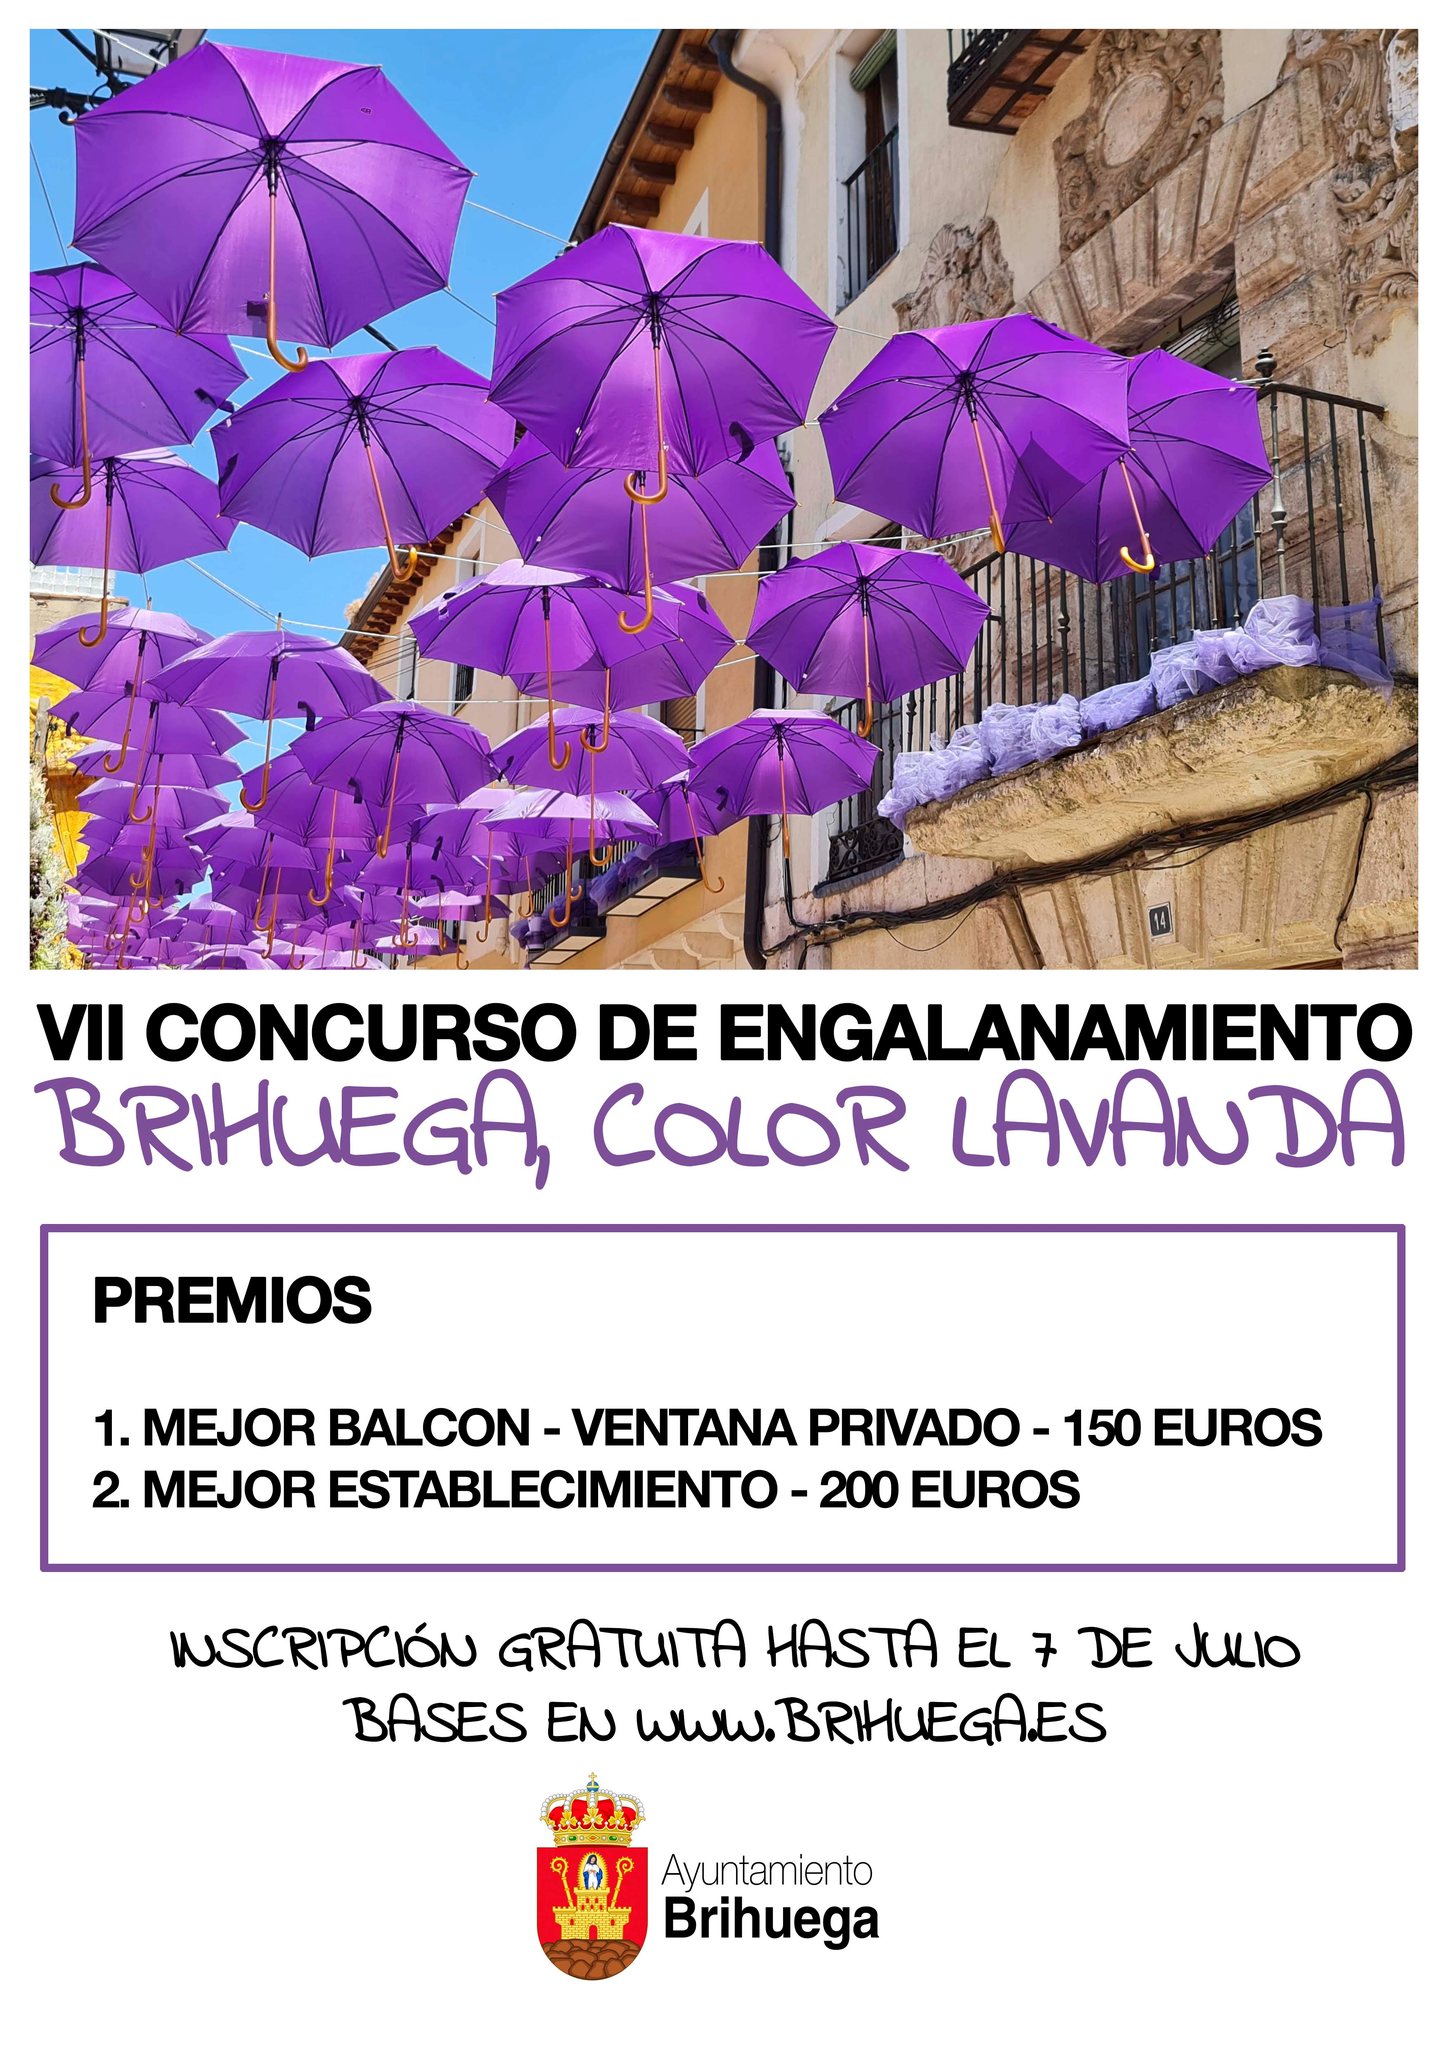 Participa en el VII Concurso de Engalanamiento 'Brihuega Color Lavanda' y decora tu balcón o comercio